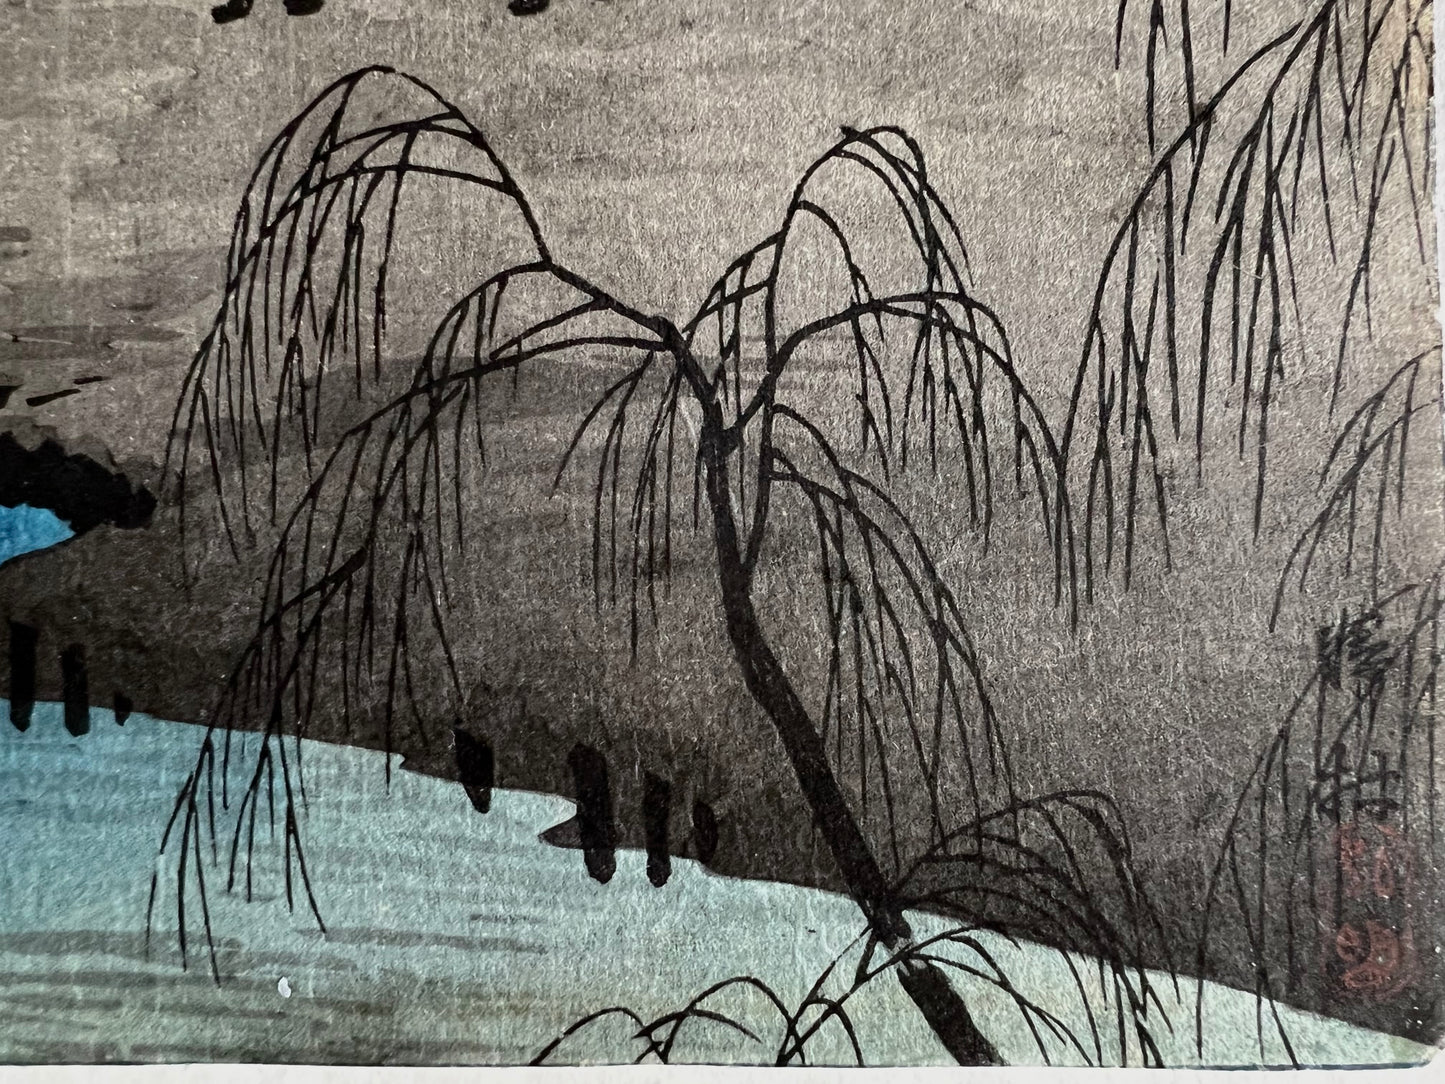 estampe japonaise paysage un couple de paysan et leur bufle arrive devant leur maison au bord de l'eau, une nuit de pleine lune, gros plan sur la végétation, sceau et signature de l'artiste